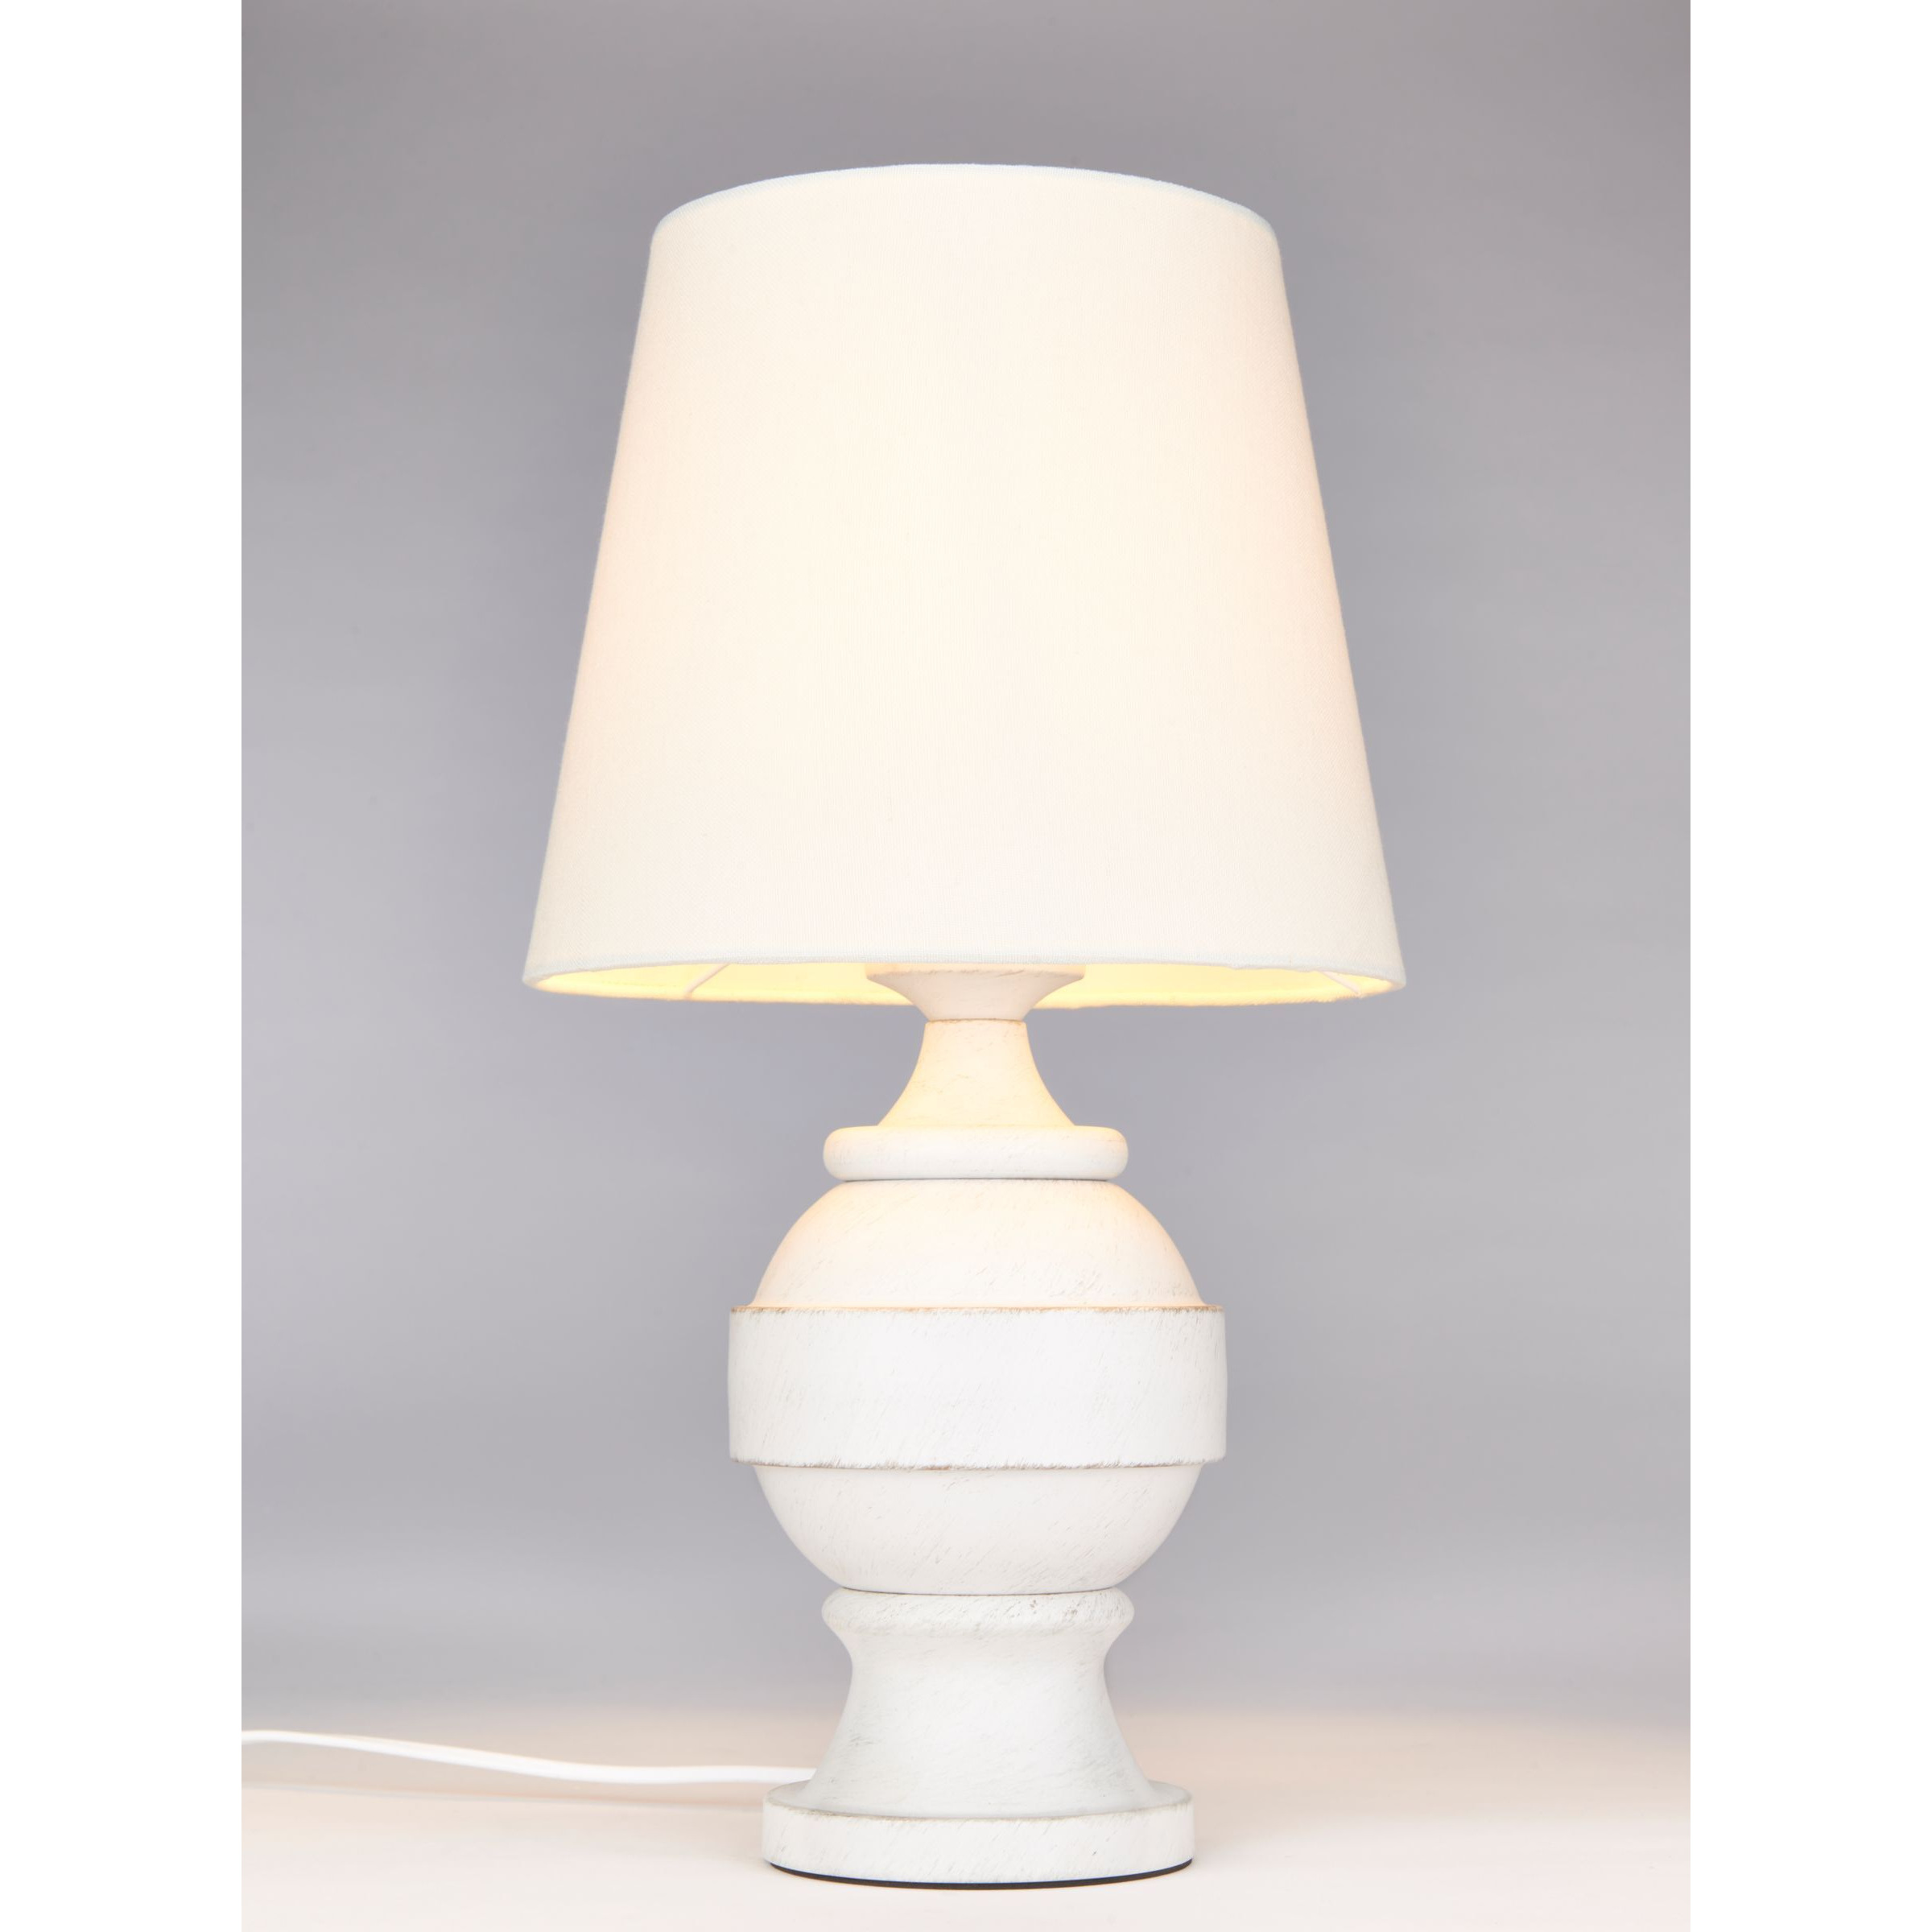 John Lewis Carlita Table Lamp, White - image 1